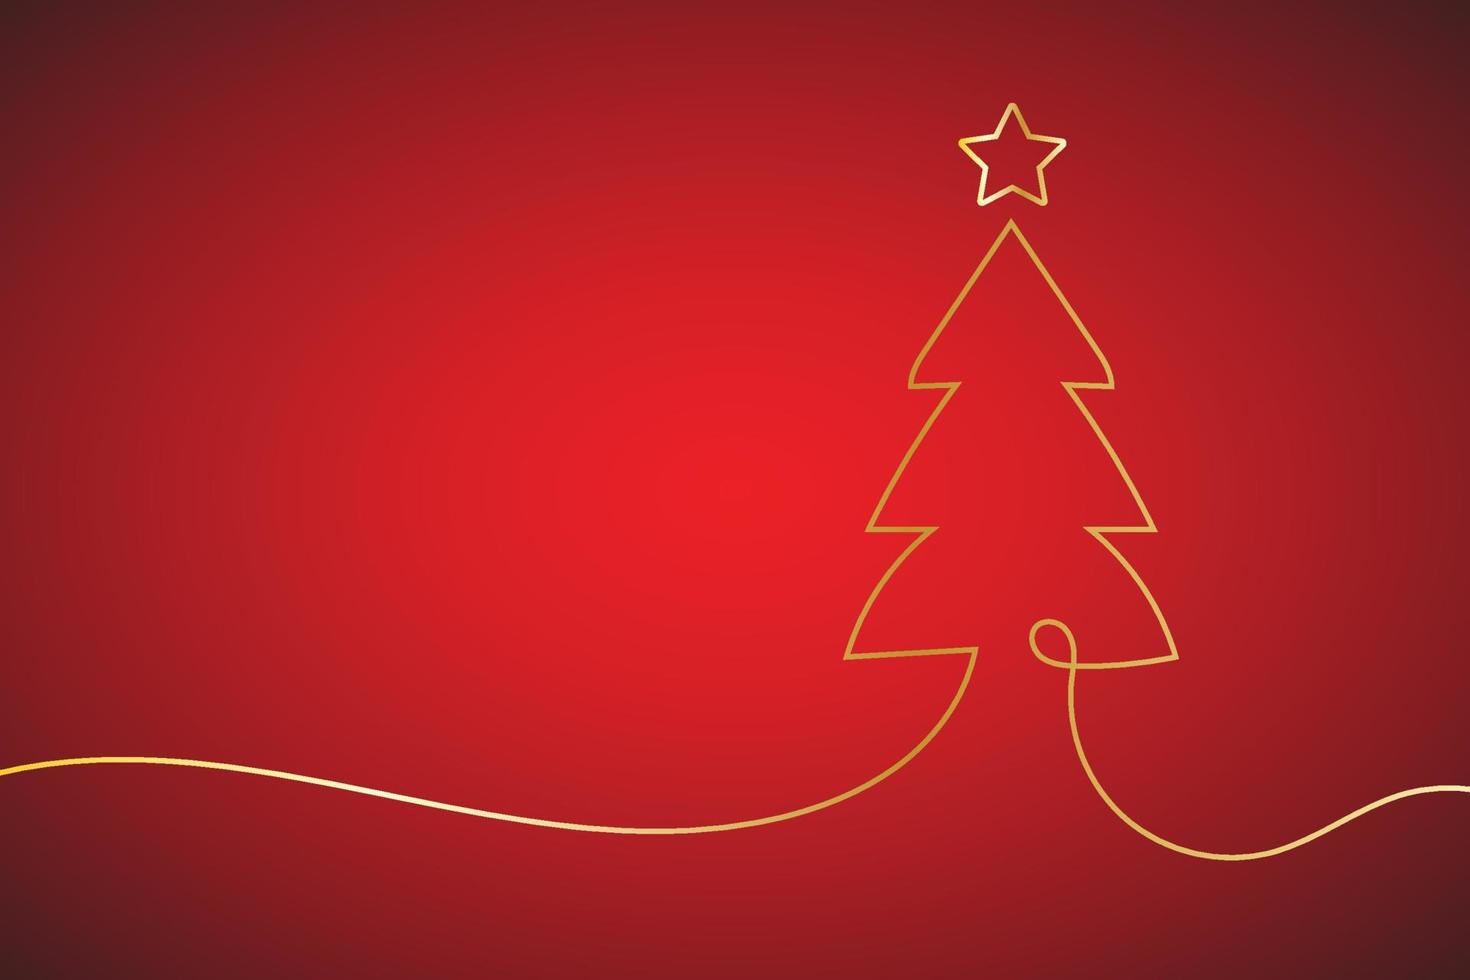 jul träd med stjärnor på en mörk bakgrund. vektor illustration